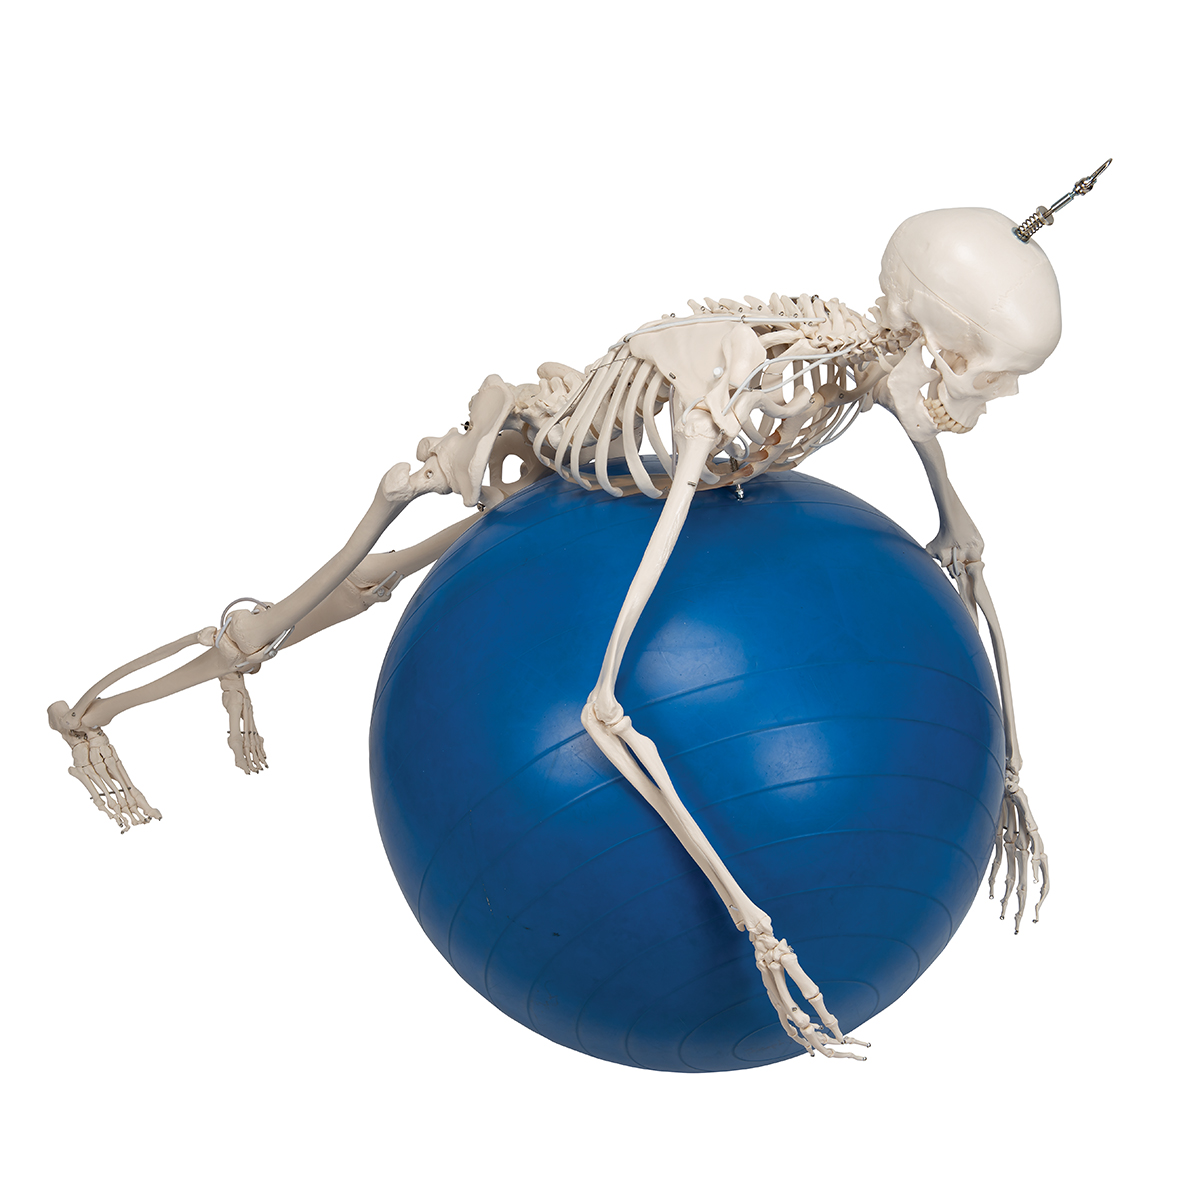 НОВИНКА // Функціональна та фізіологічна модель скелета людини Френк на підвісній підставці